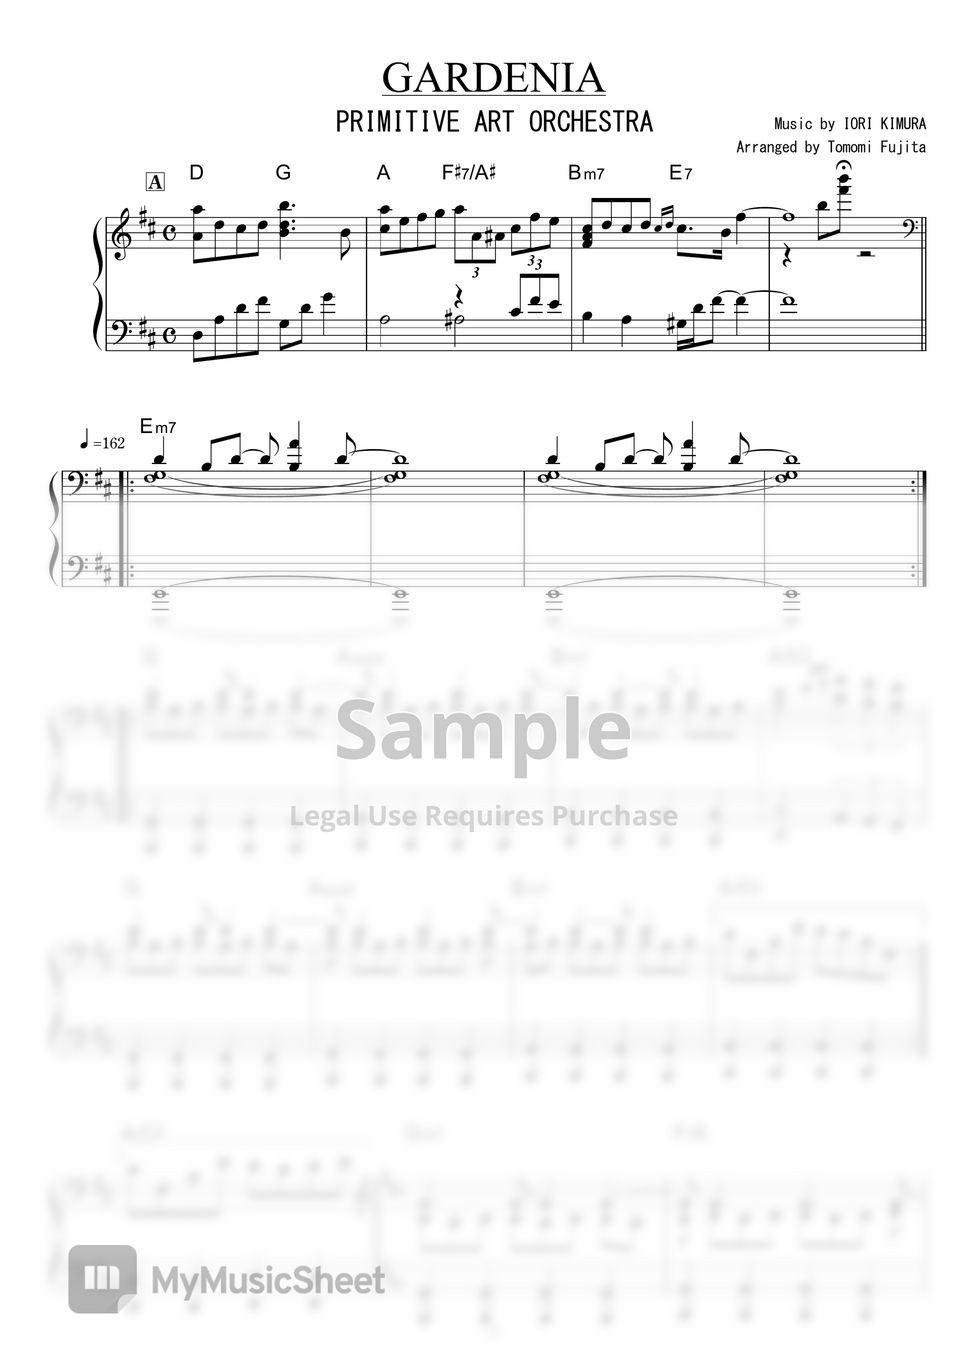 PRIMITIVE ART ORCHESTRA - GARDENIA by piano*score